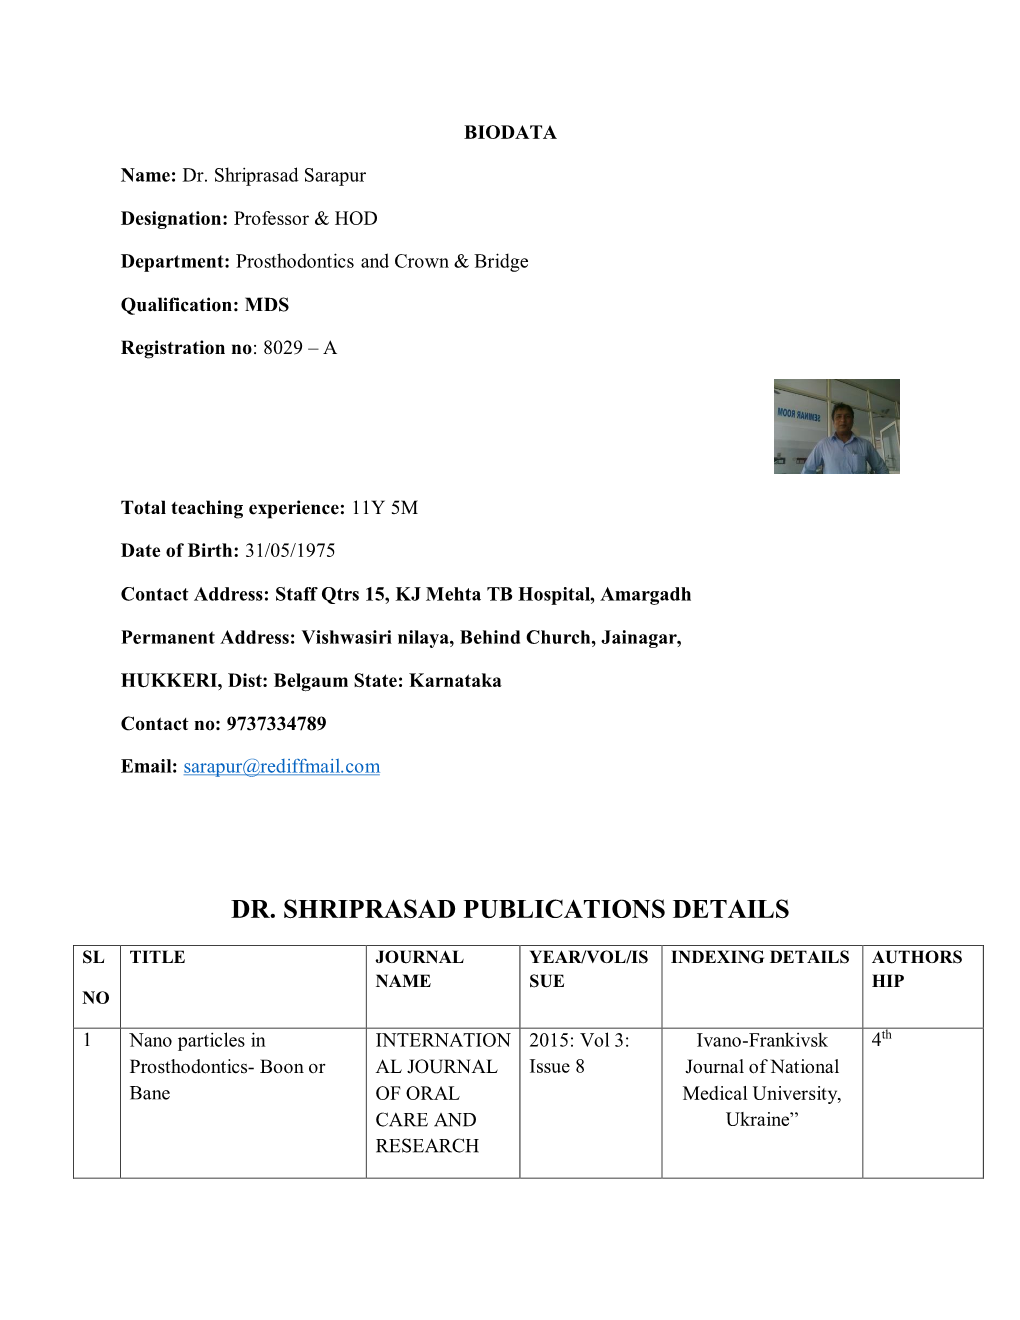 Dr. Shriprasad Publications Details